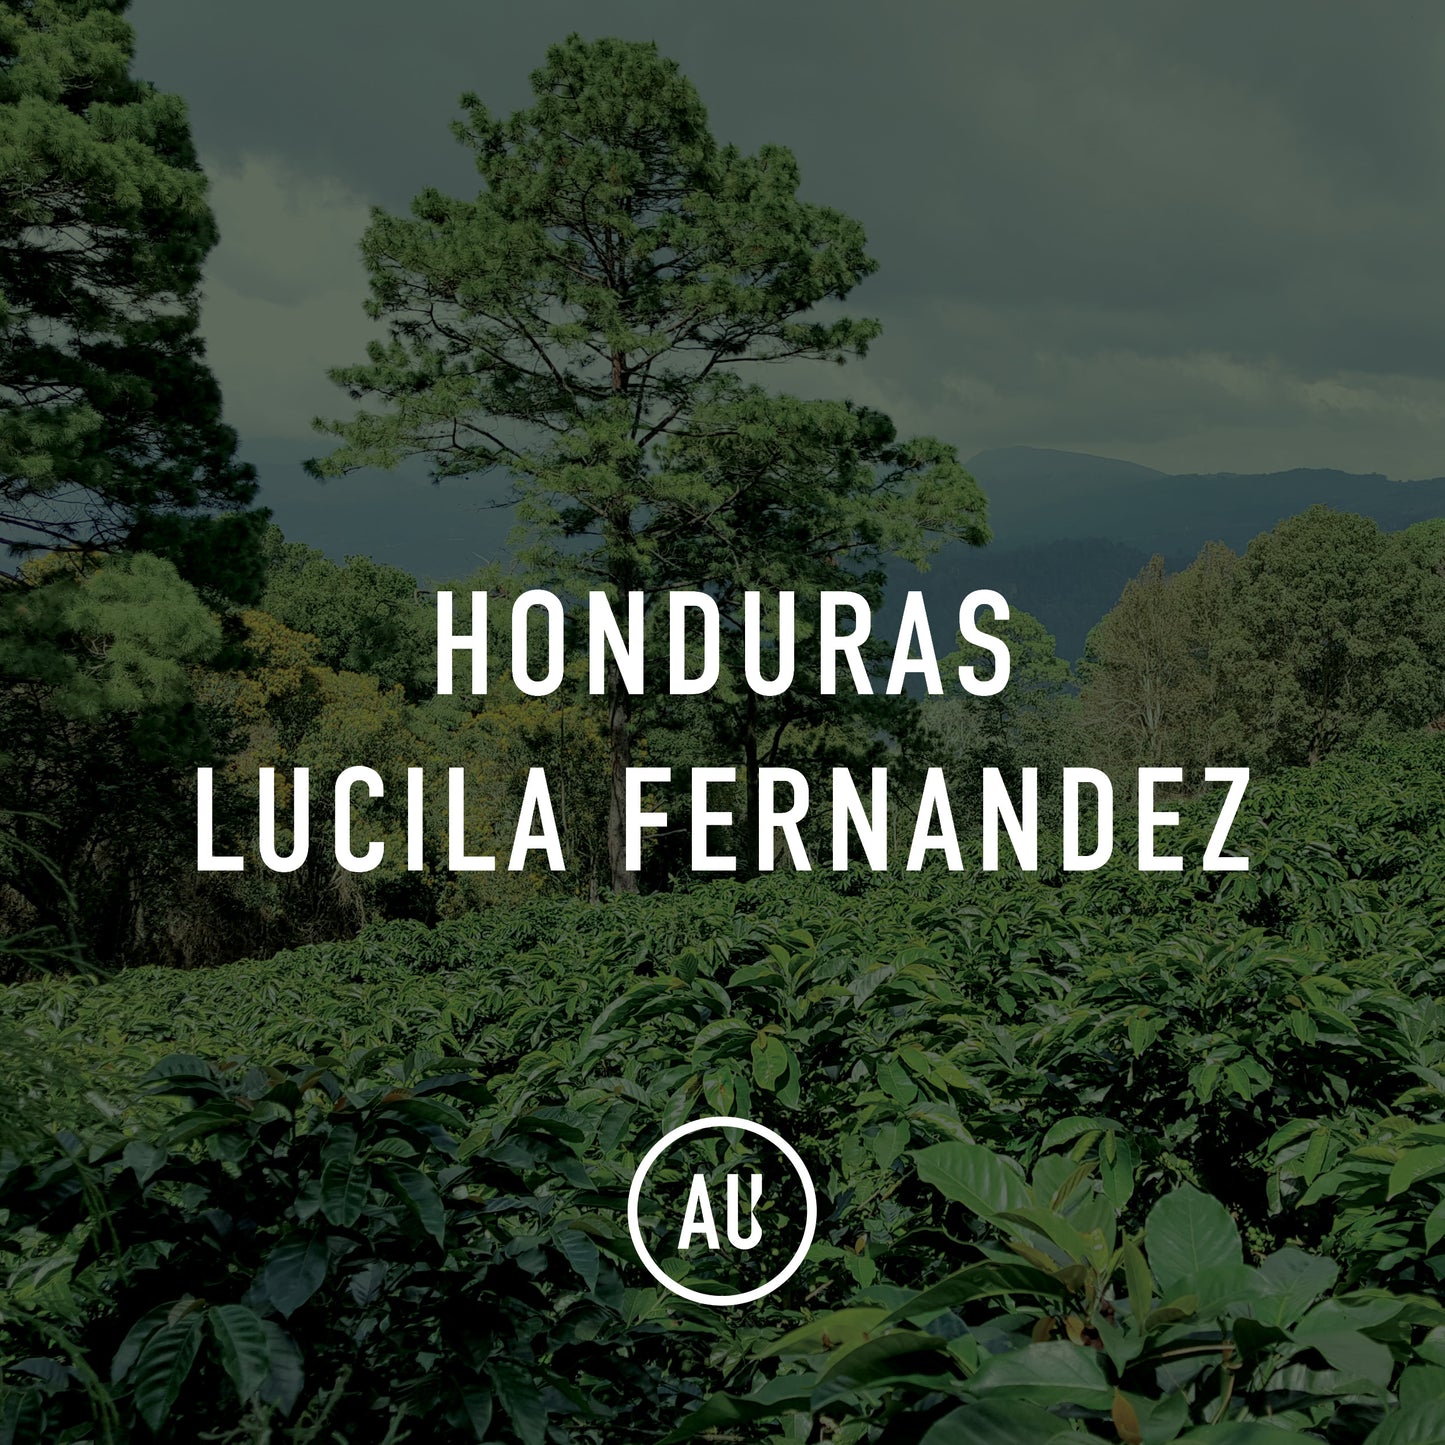 Honduras Lucila Fernandez